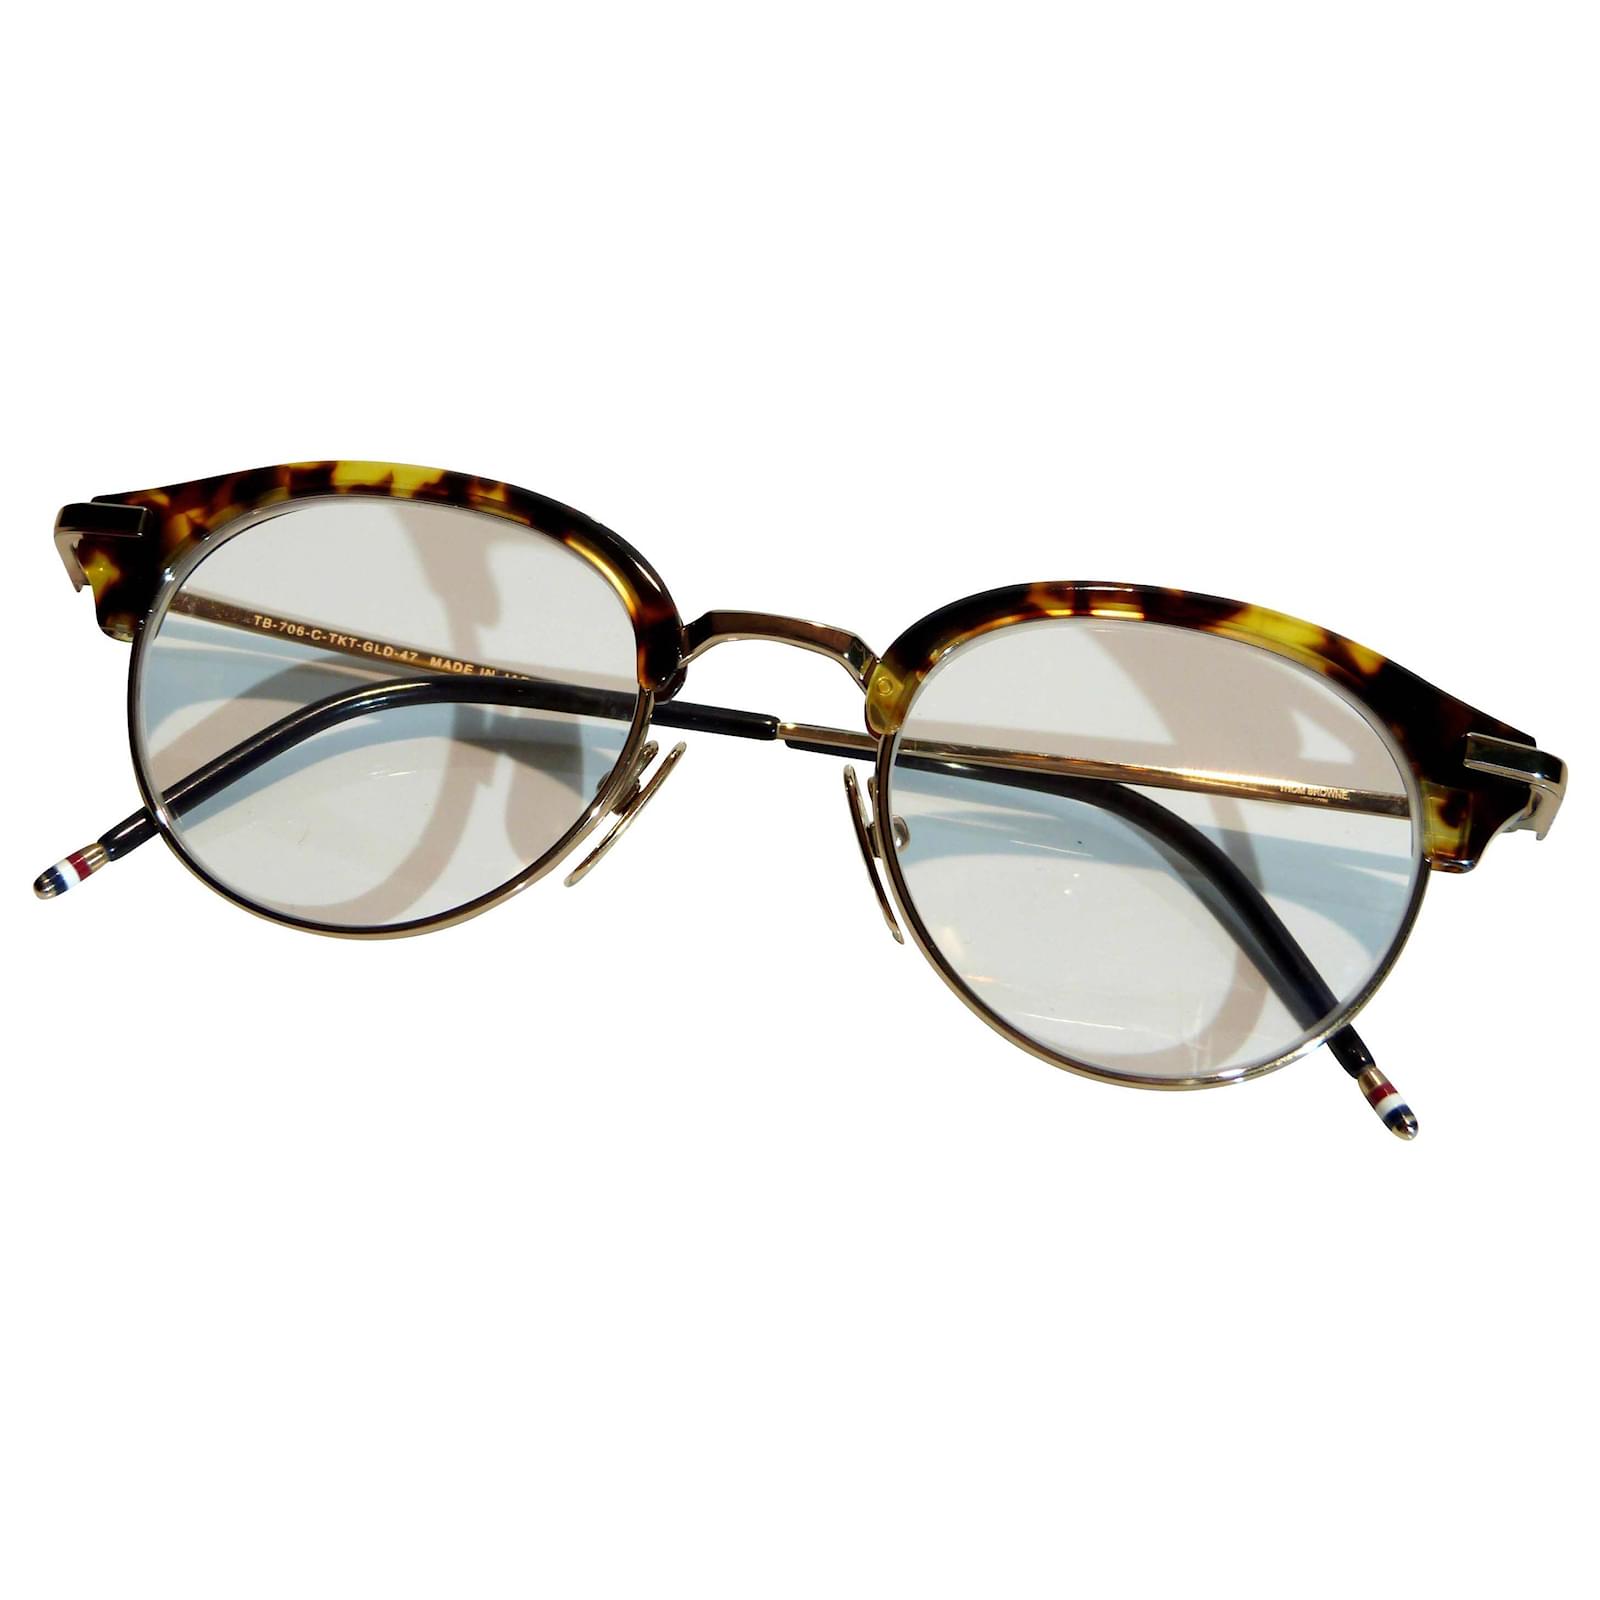 Thom Browne glasses Tom Browne new-york 